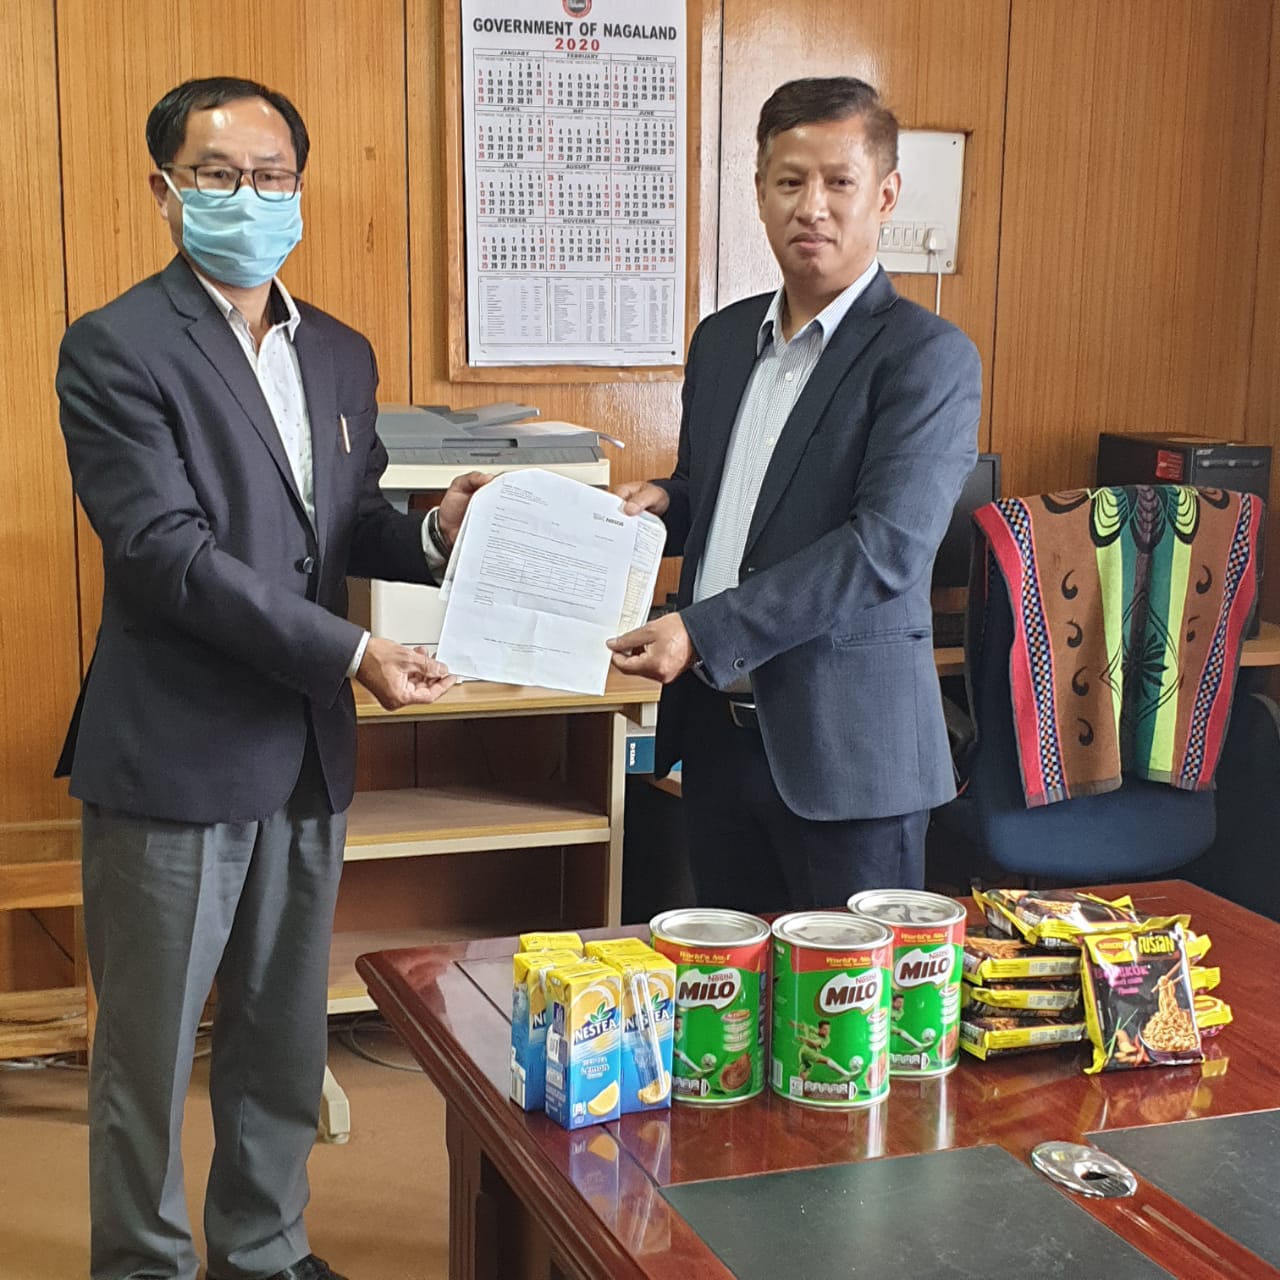 Nestle India donates products to Nagaland